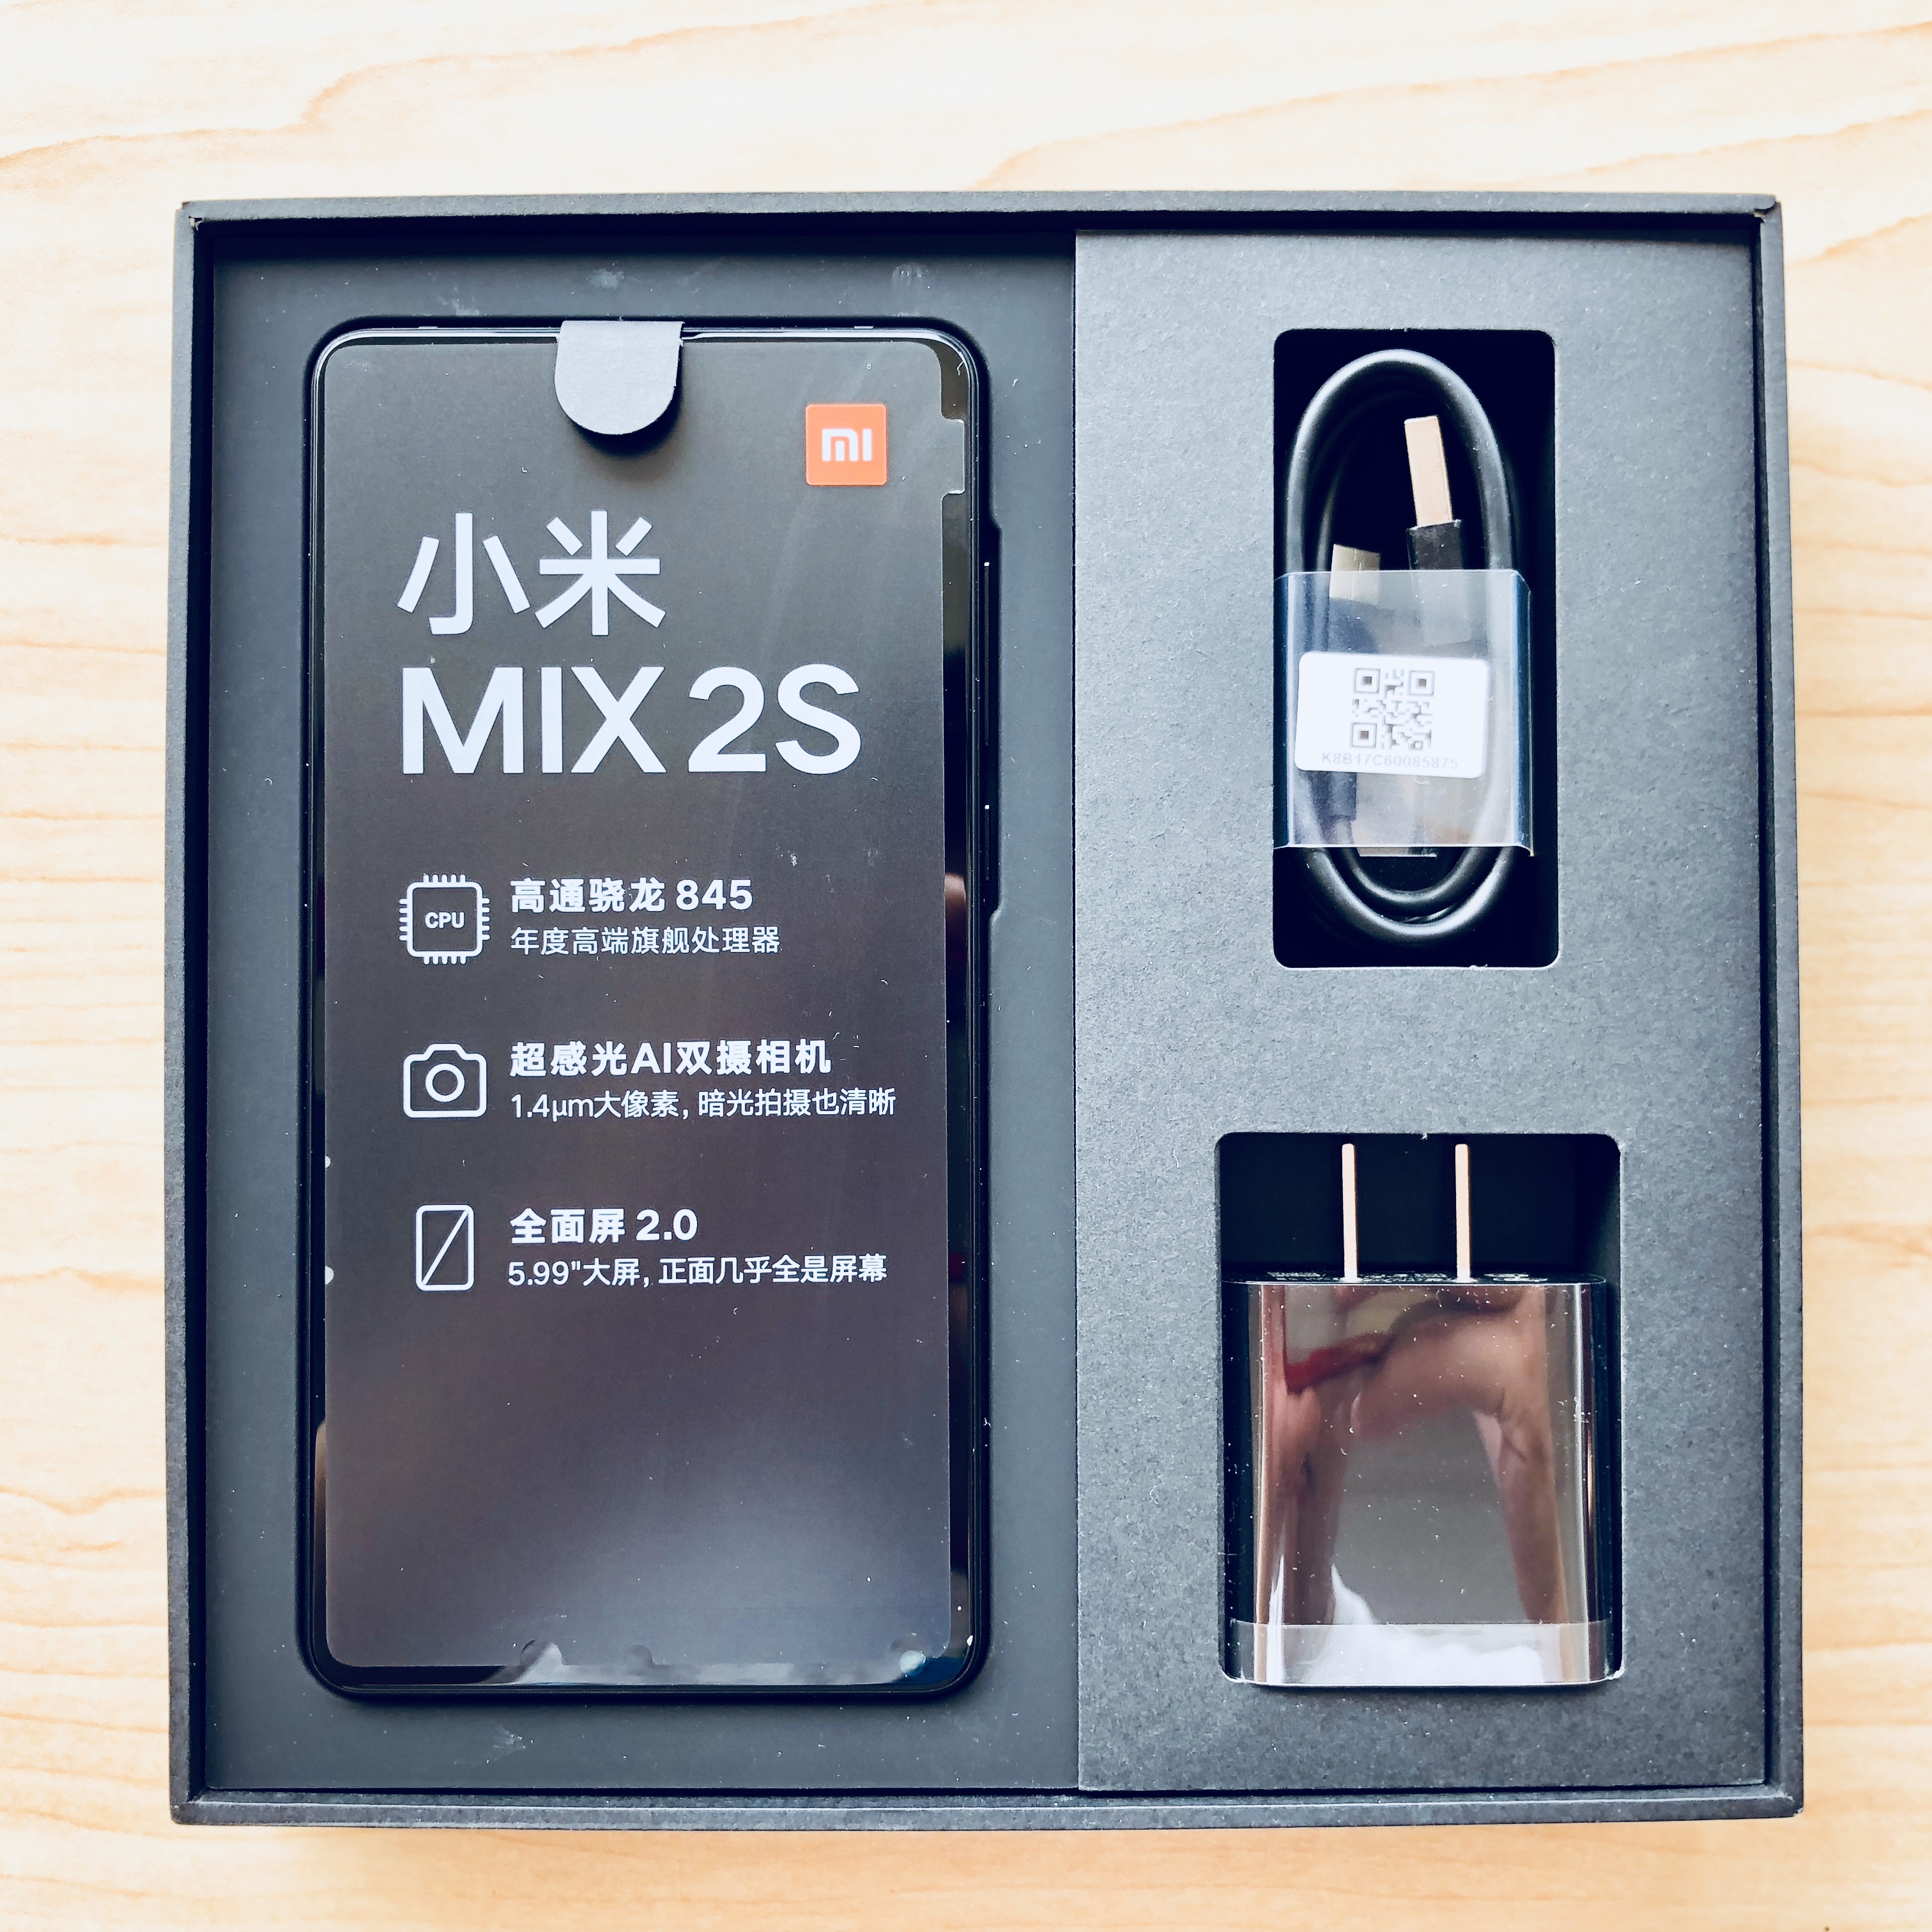 小米Mix 2s包装